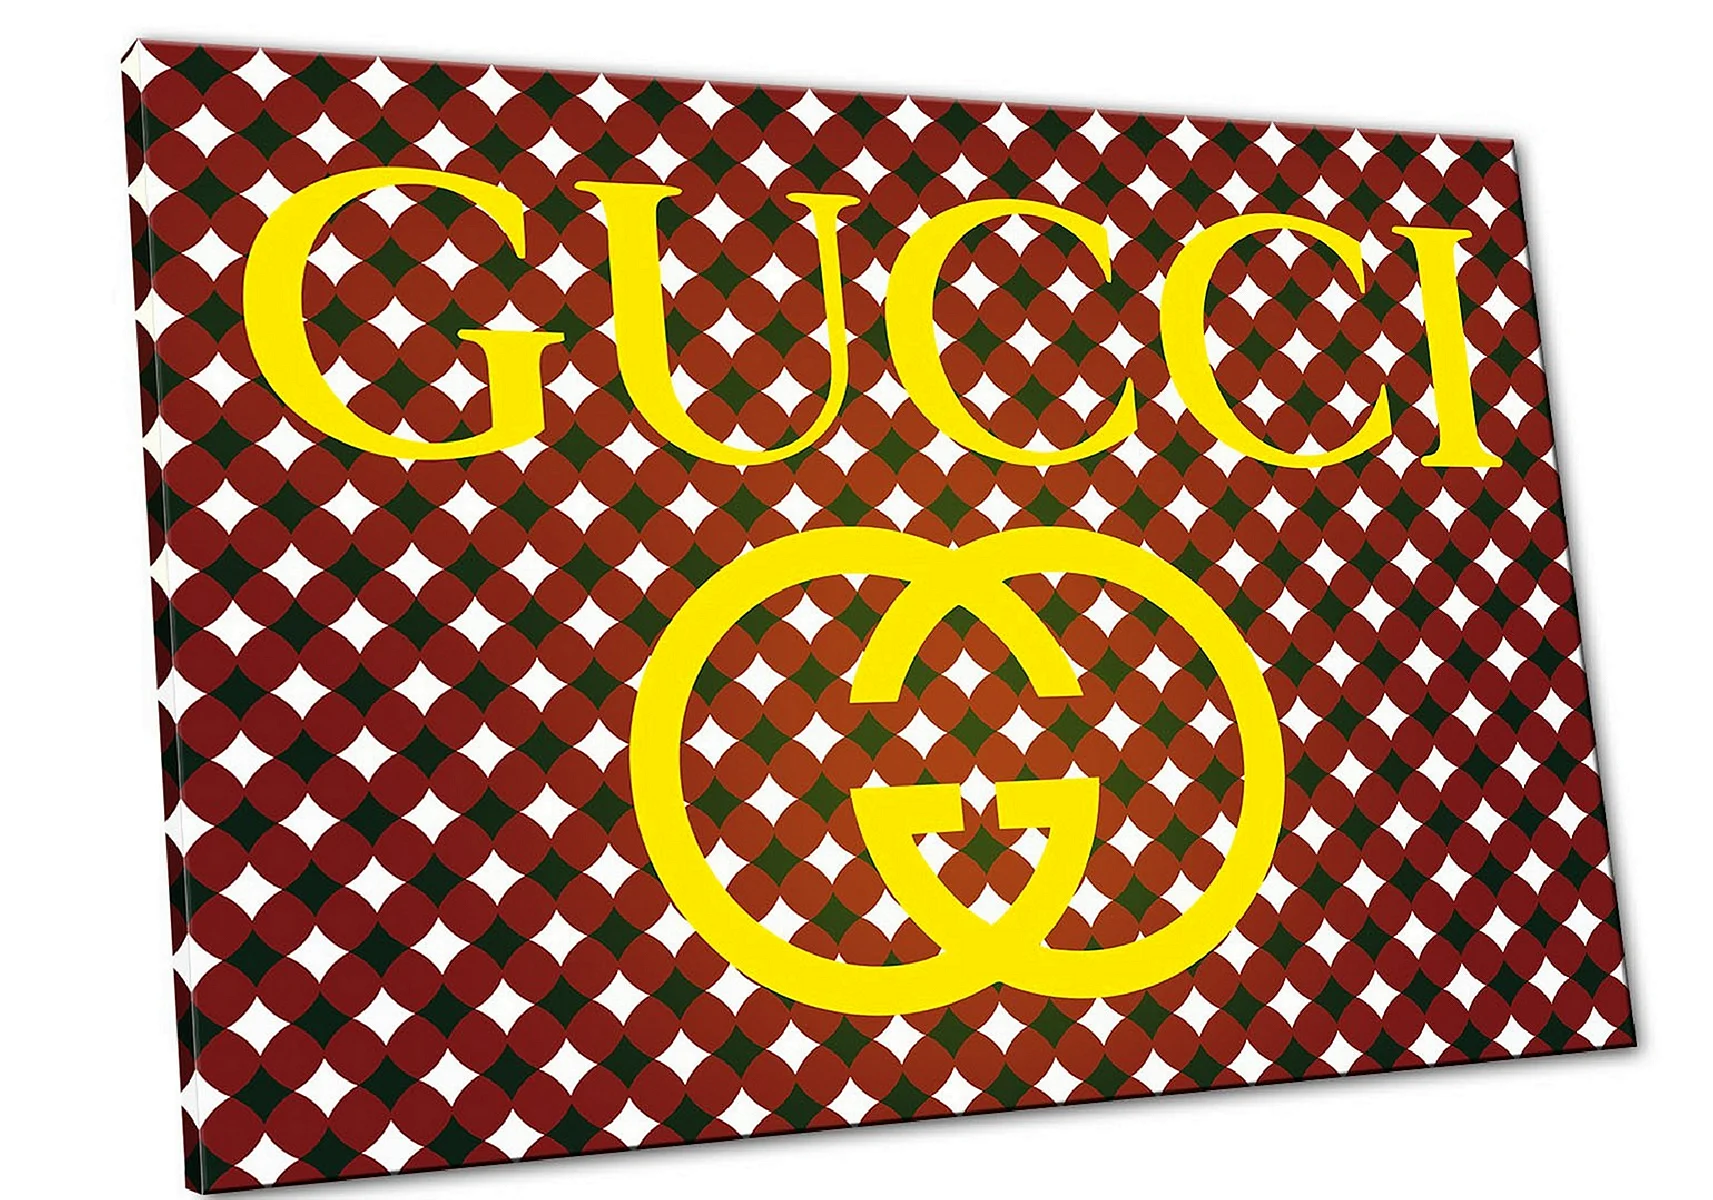 Gucci Gold Wallpaper